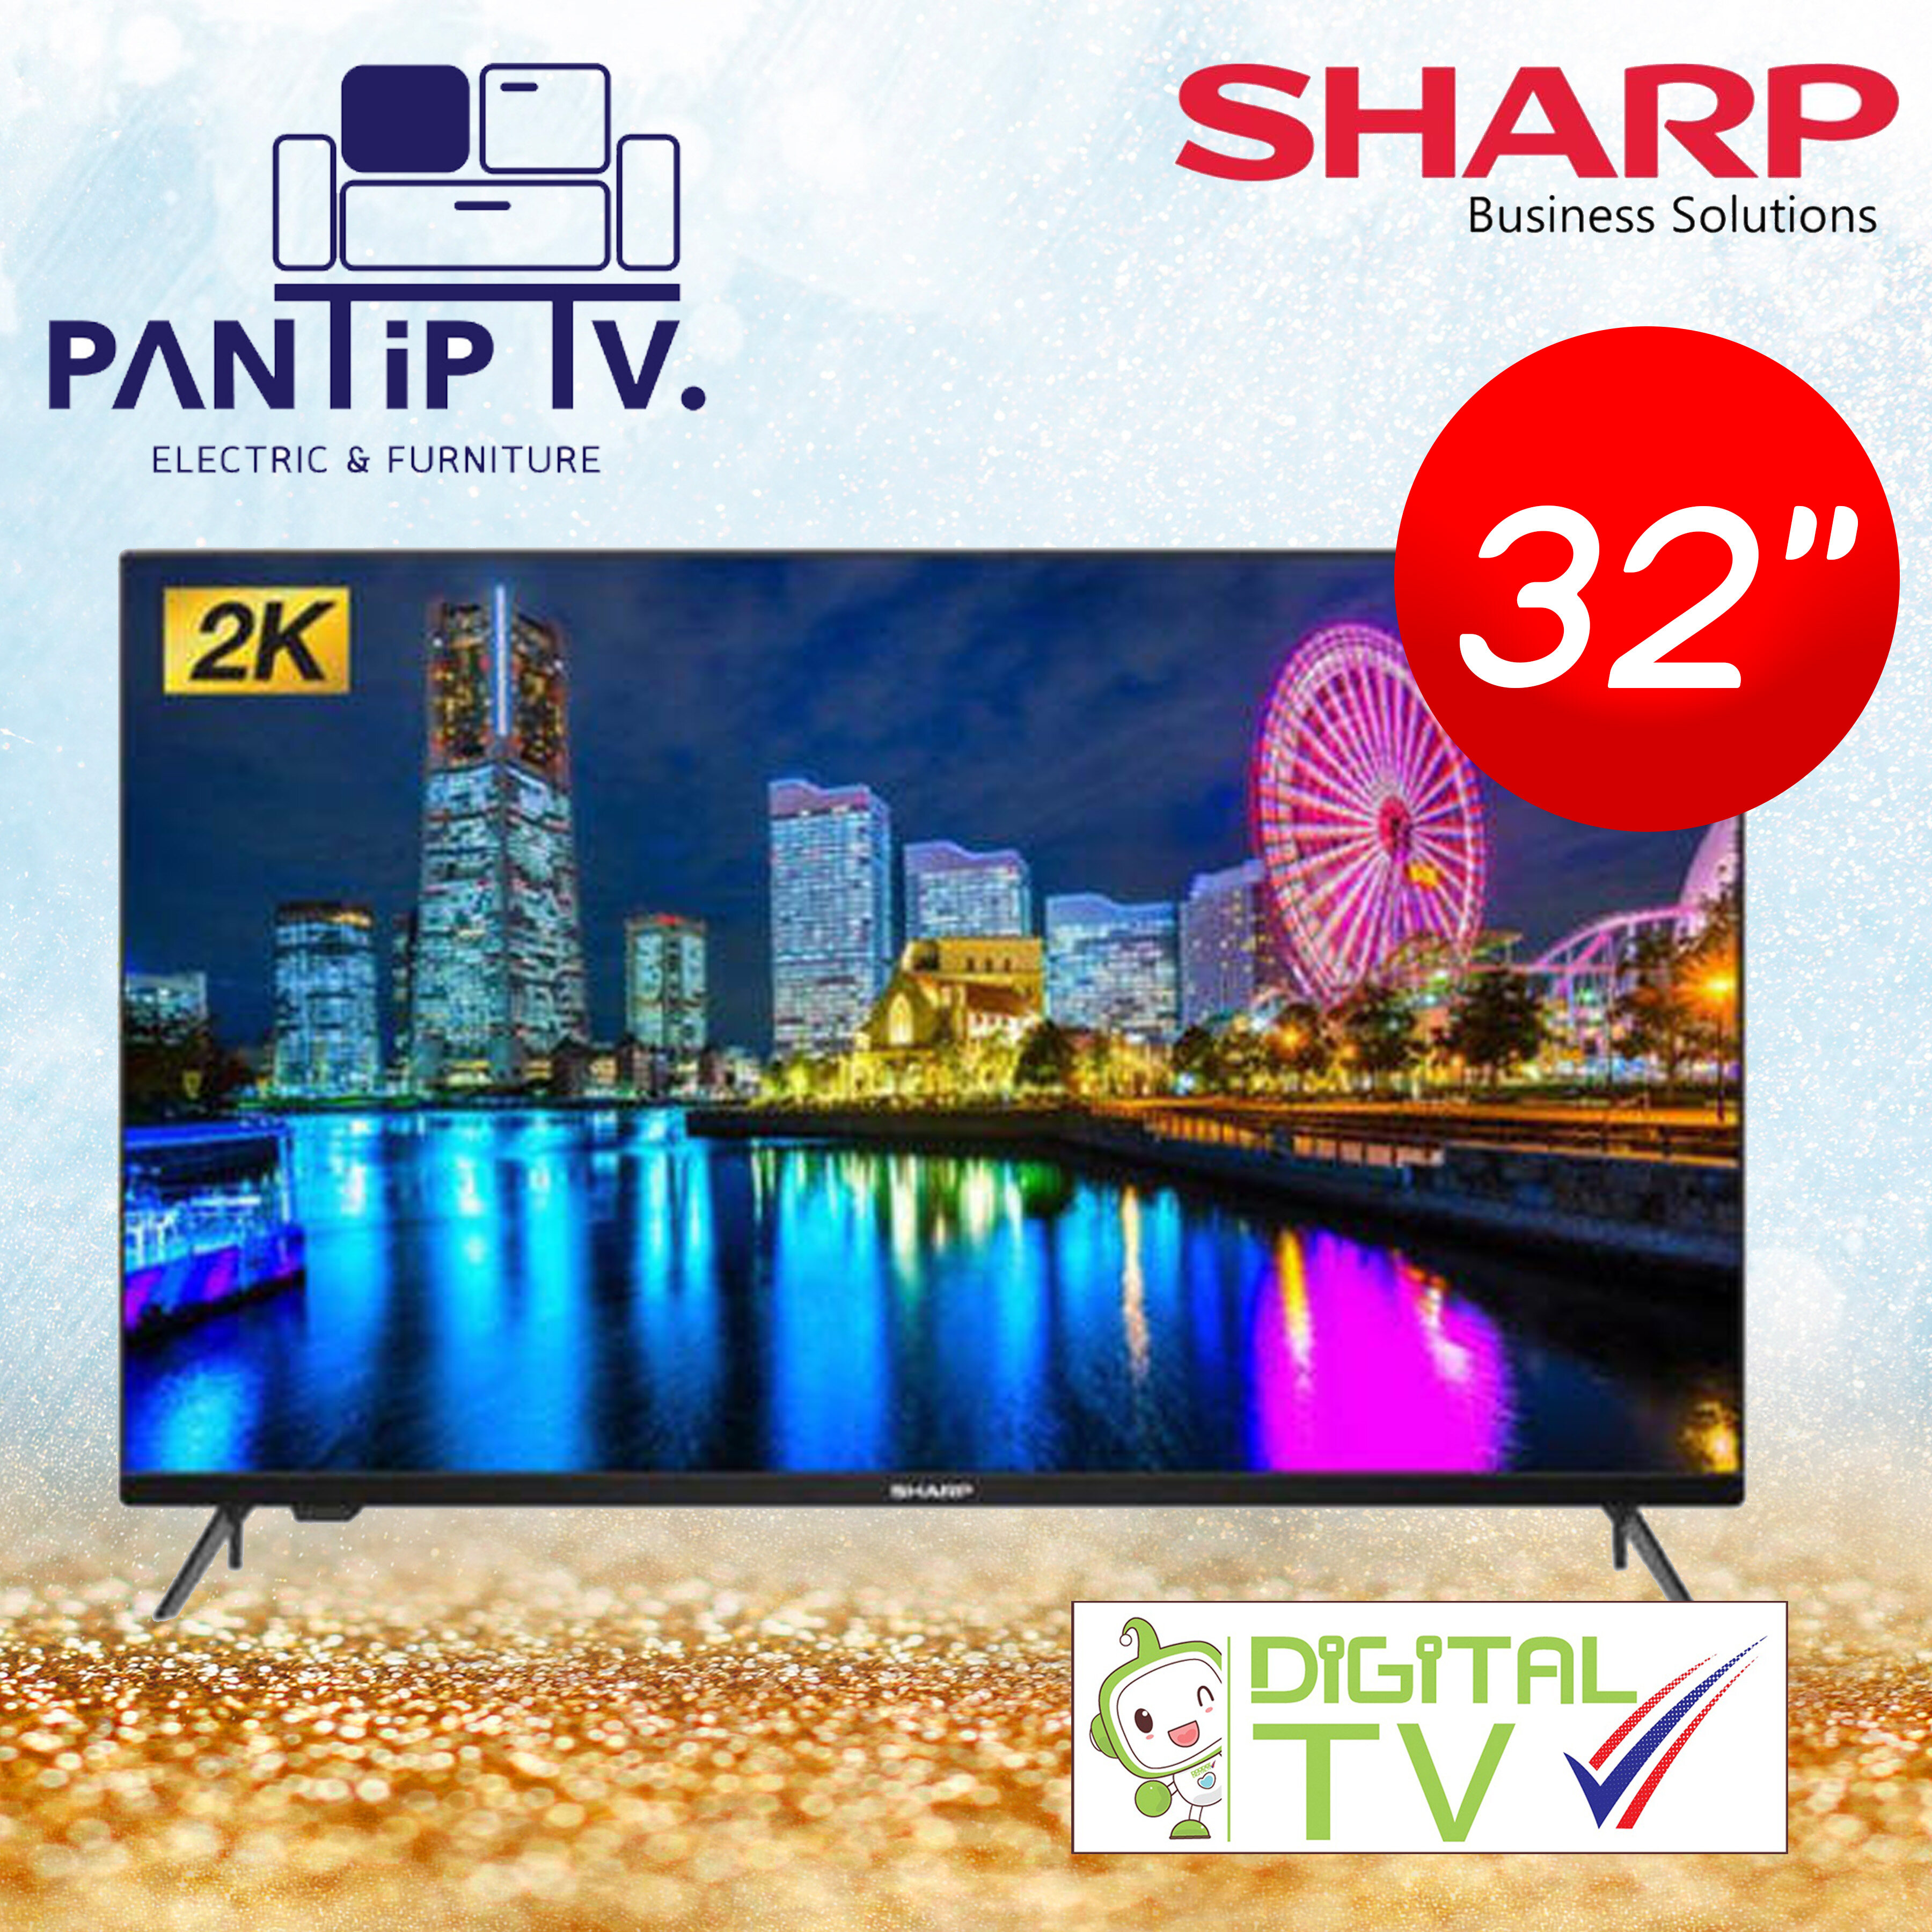 โปรโมชั่น Flash Sale : SHARP ทีวี HD LED (32", digital TV) รุ่น 2T-C32CE2X (รับประกันศูนย์ 1 ปี)